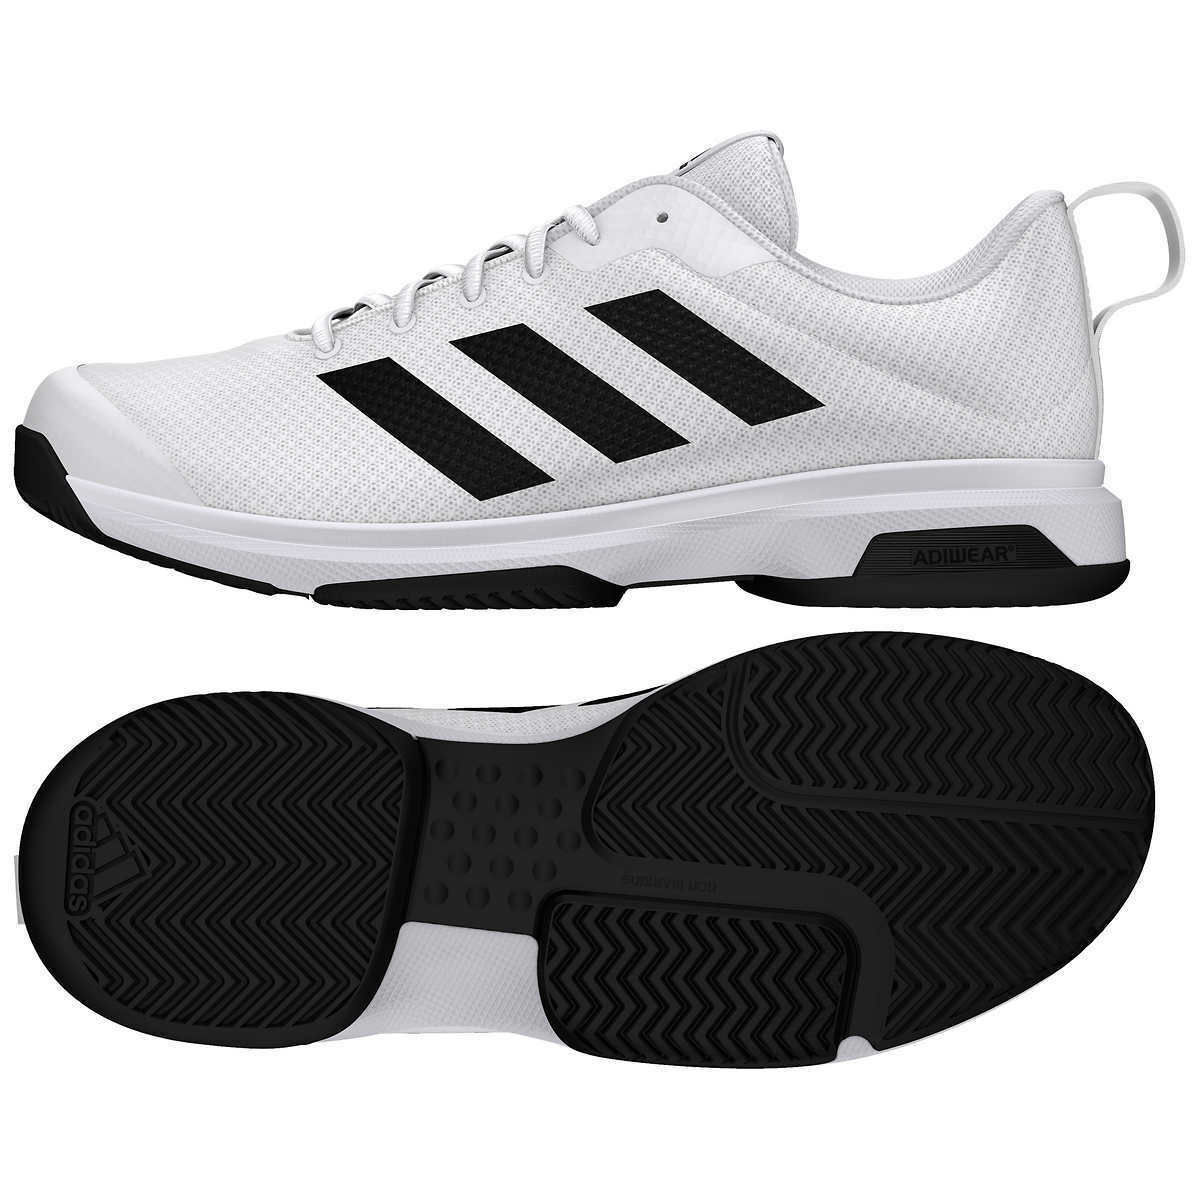 adidas Game Spec Tennis Shoes Men's size 10 FX3651